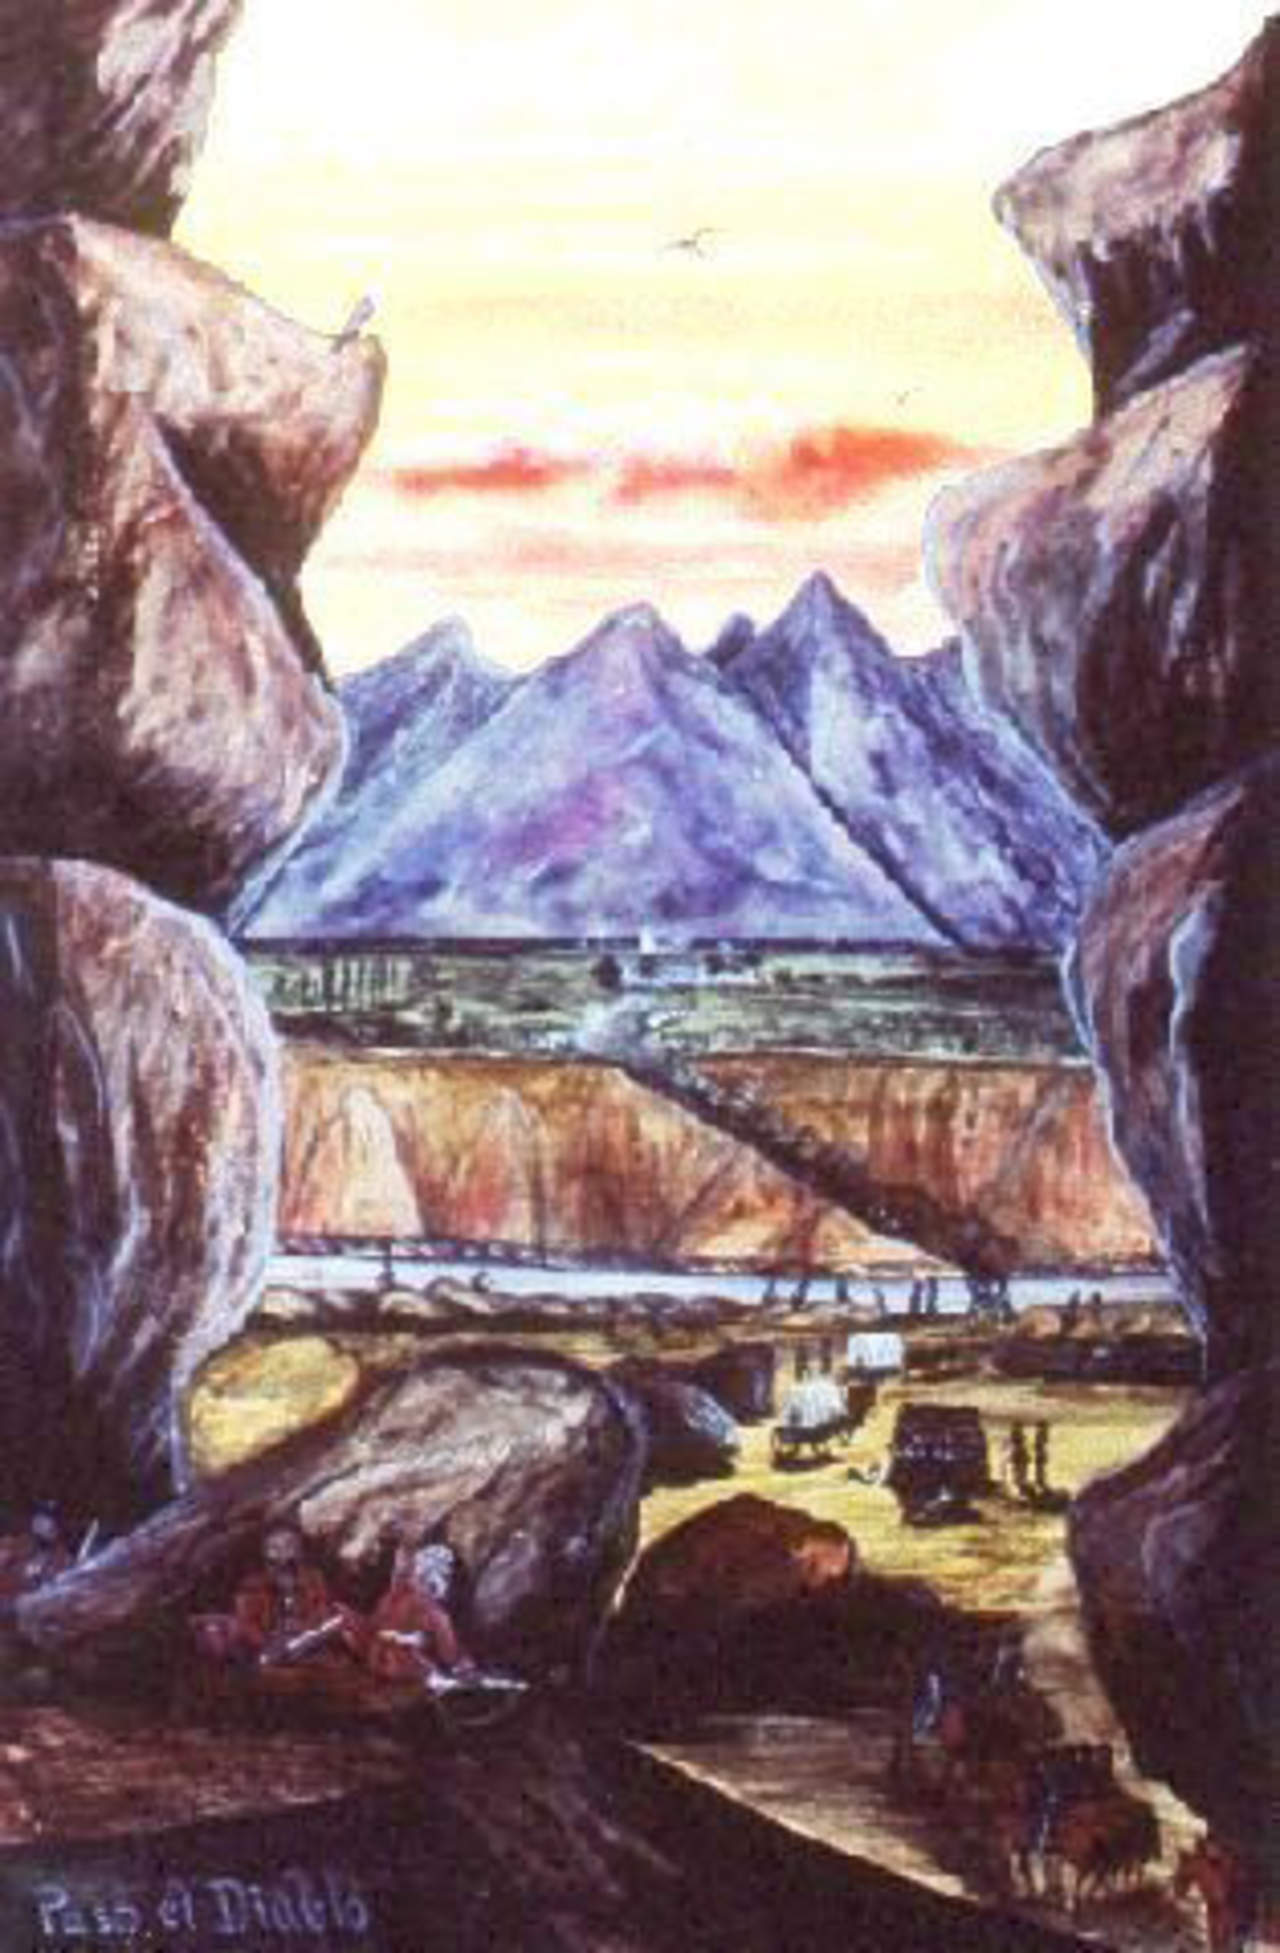 El Paso de Infiernillo (entre Patagalana y Castañuela). Creación de S. Chamberlain, miliciano del ejército de J.E.Wool, a su paso por dicho sitio en diciembre de 1846.